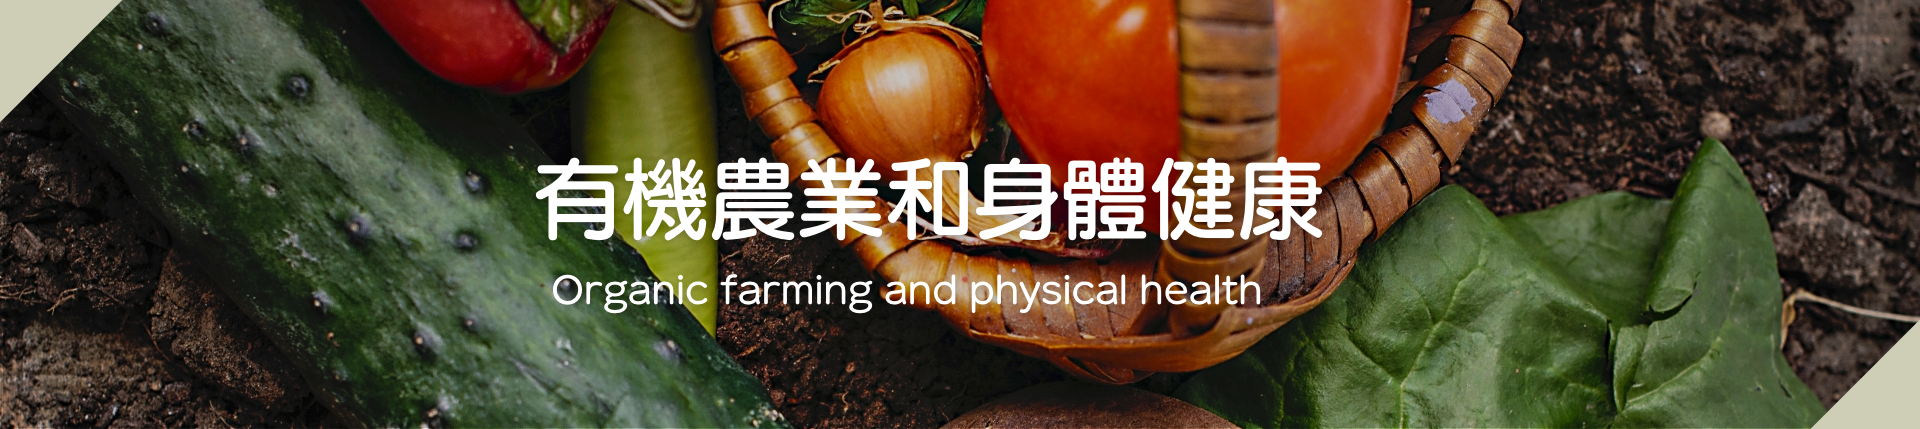 有機農業和身體健康